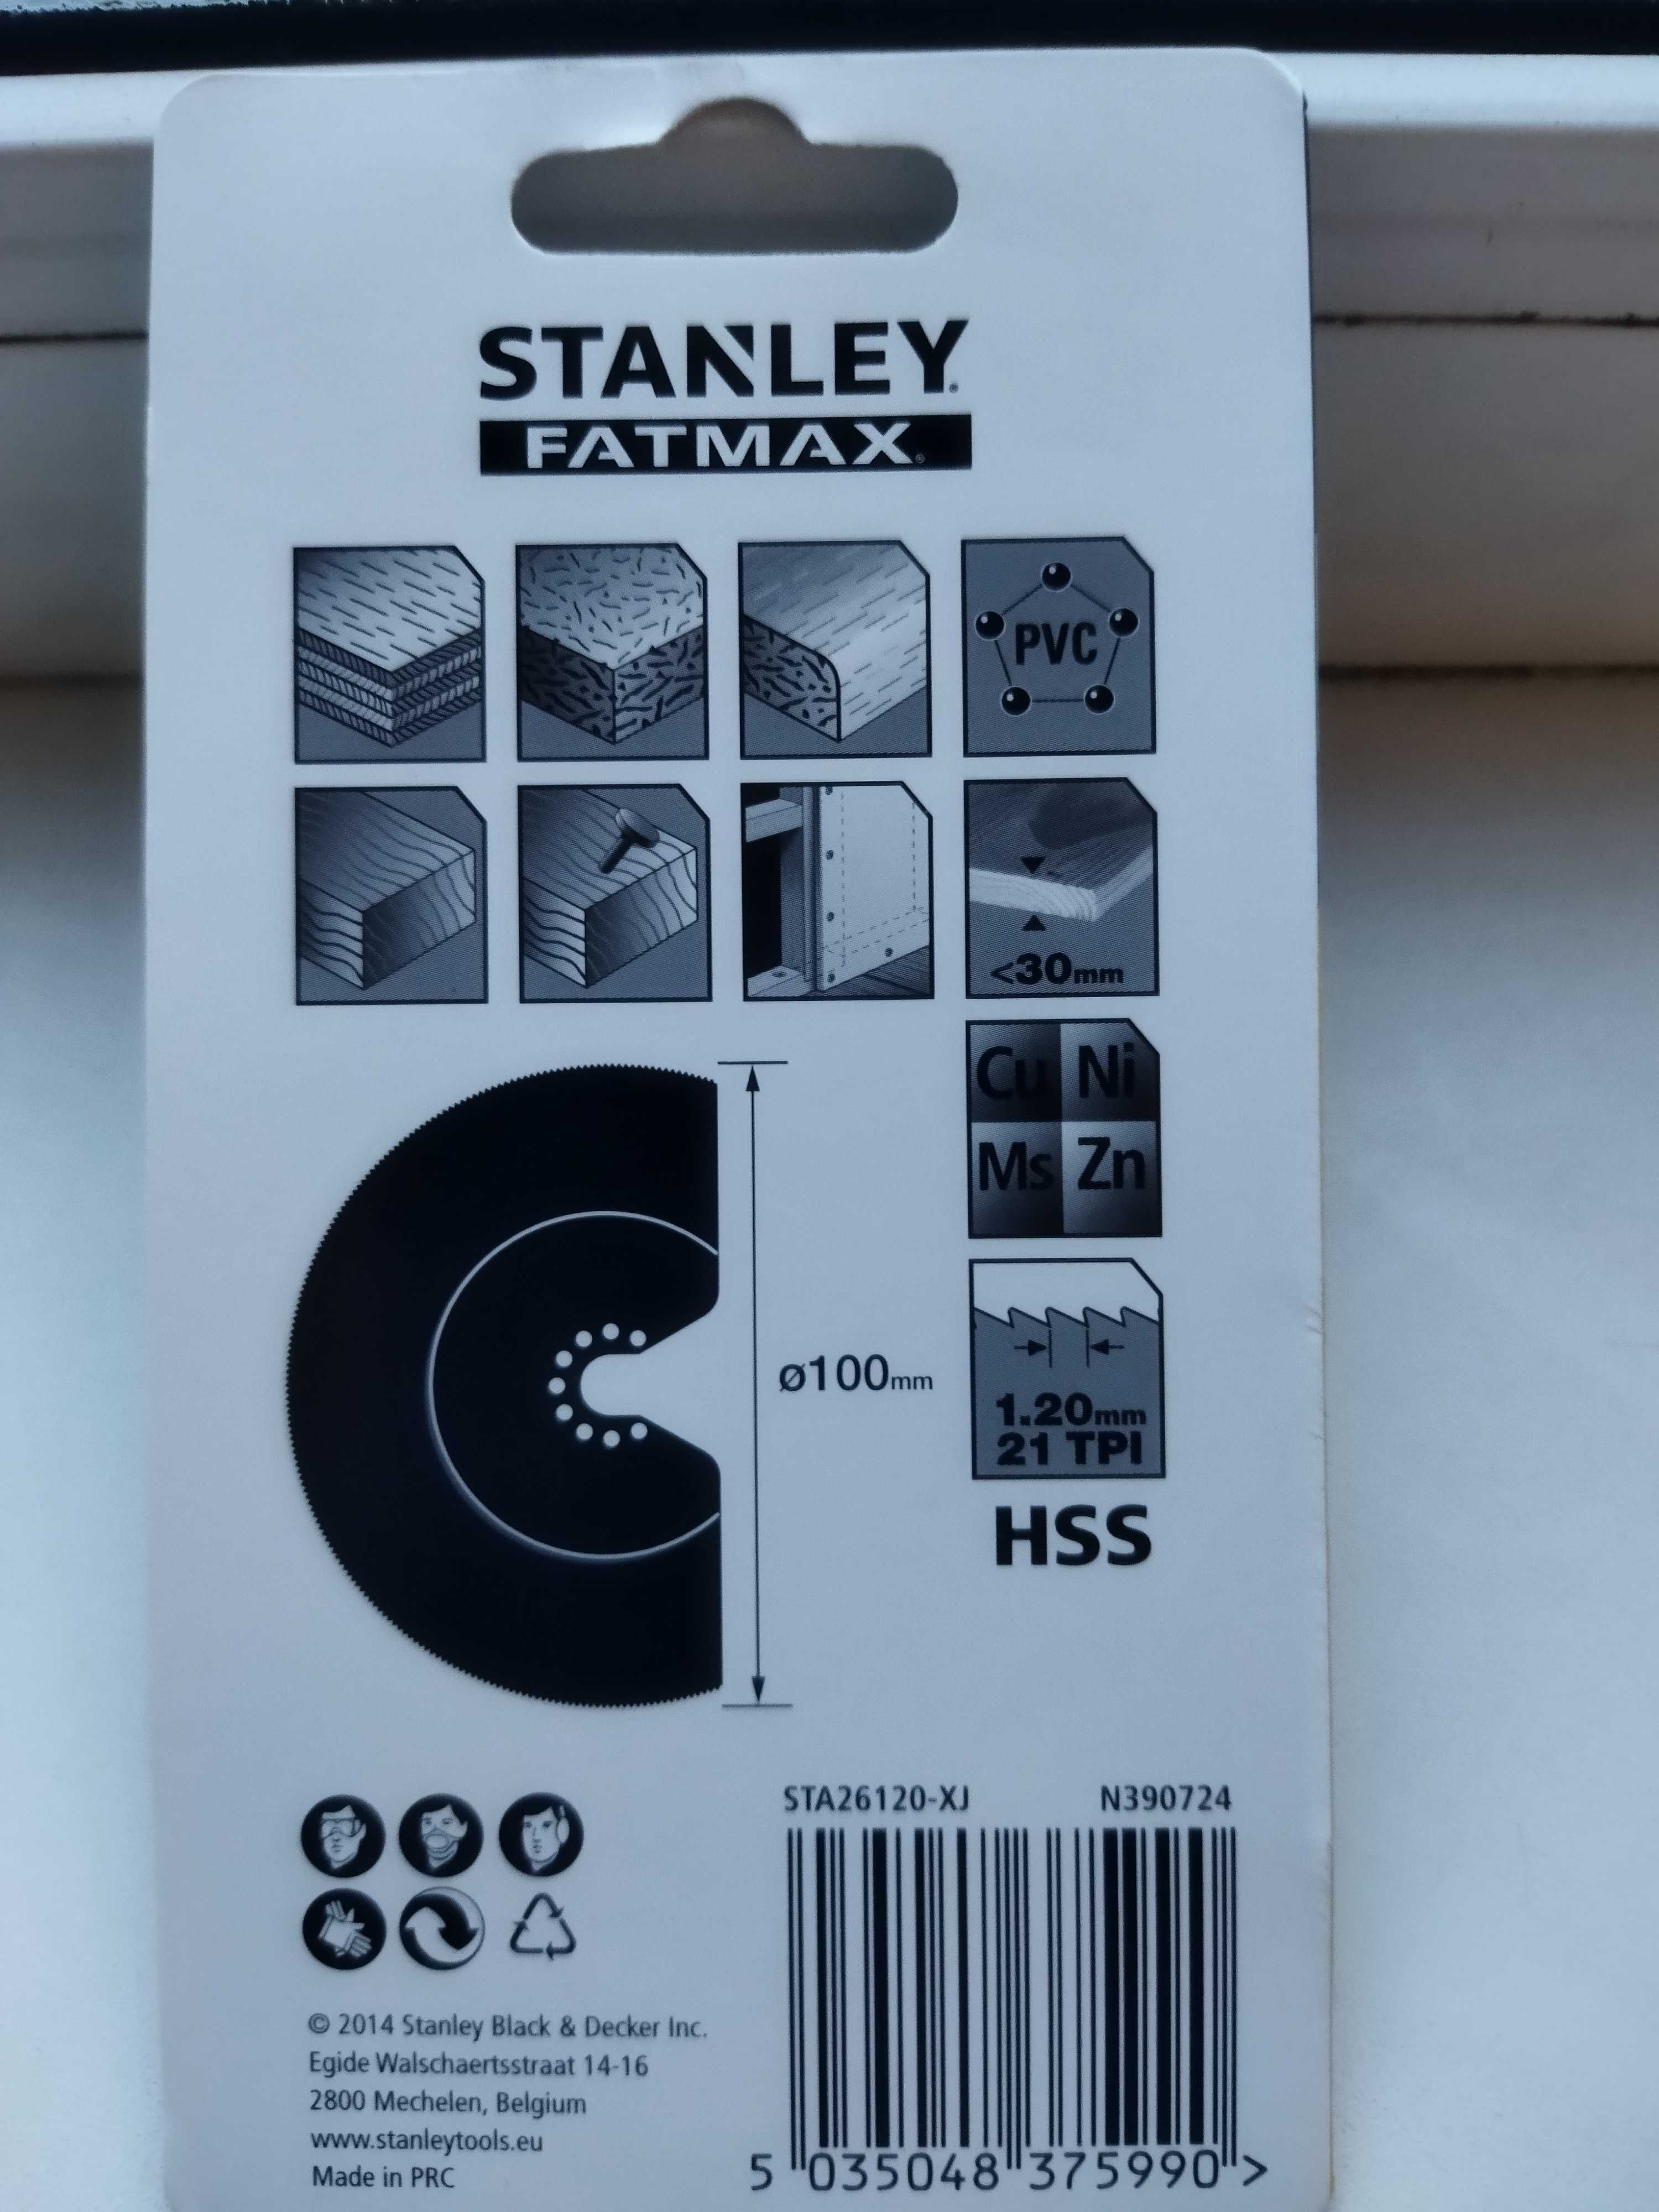 Продается пильное полотно для реноватора  STENLEY Fatmax